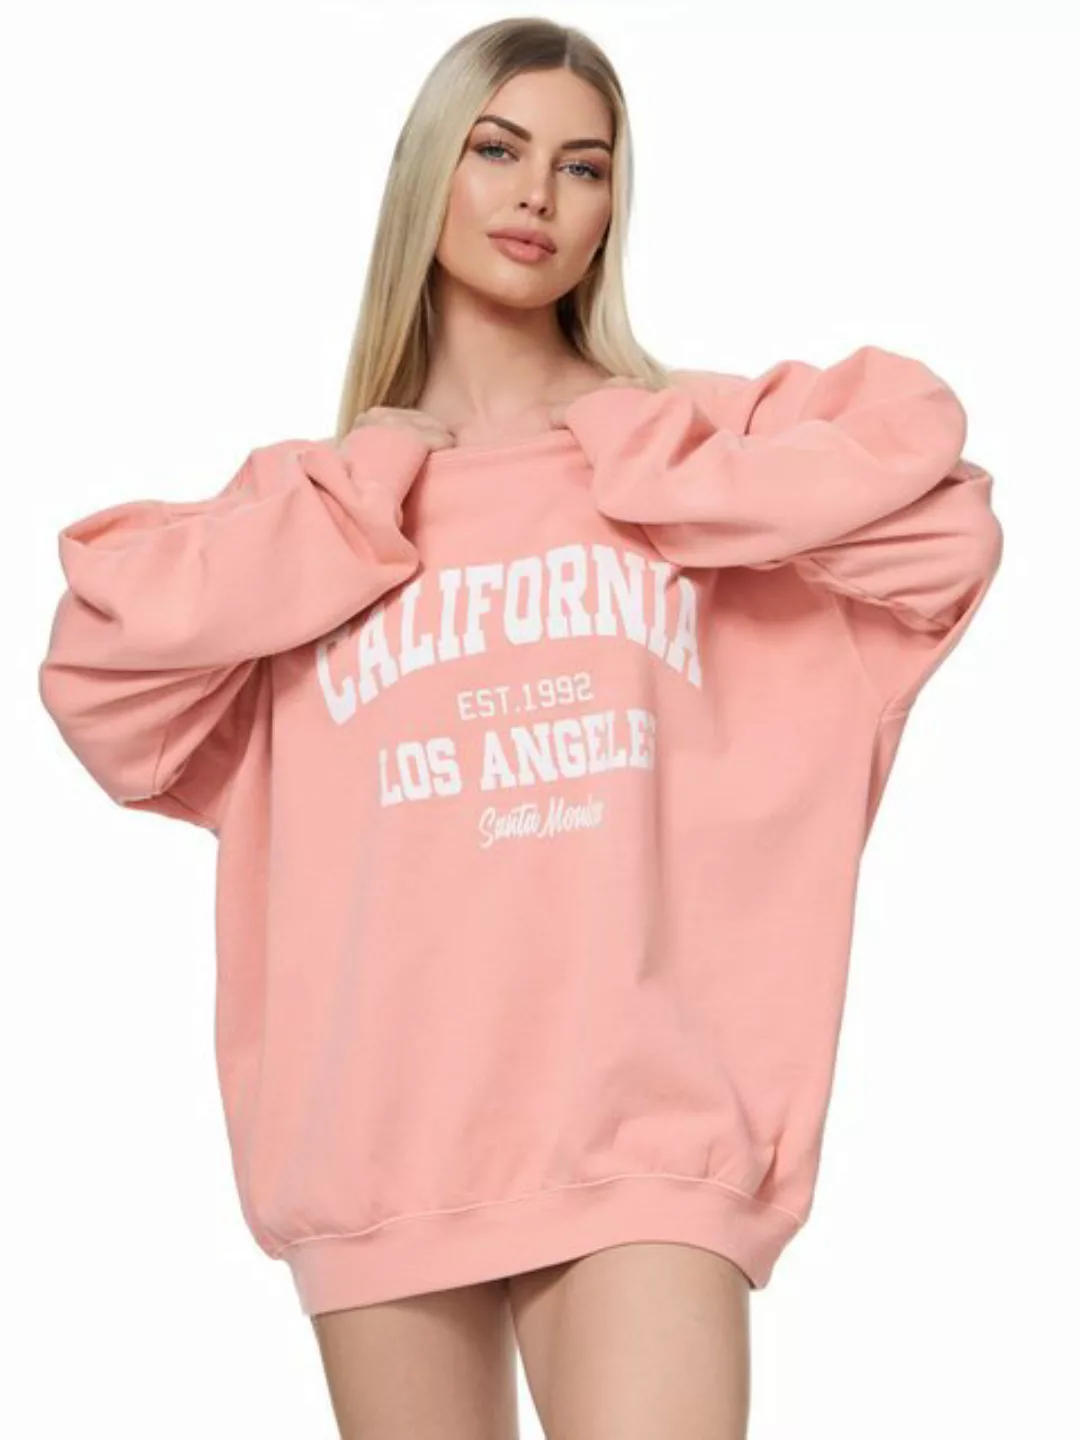 Worldclassca Longsweatshirt Worldclassca Oversized Sweatshirt CALIFORNIA Pr günstig online kaufen